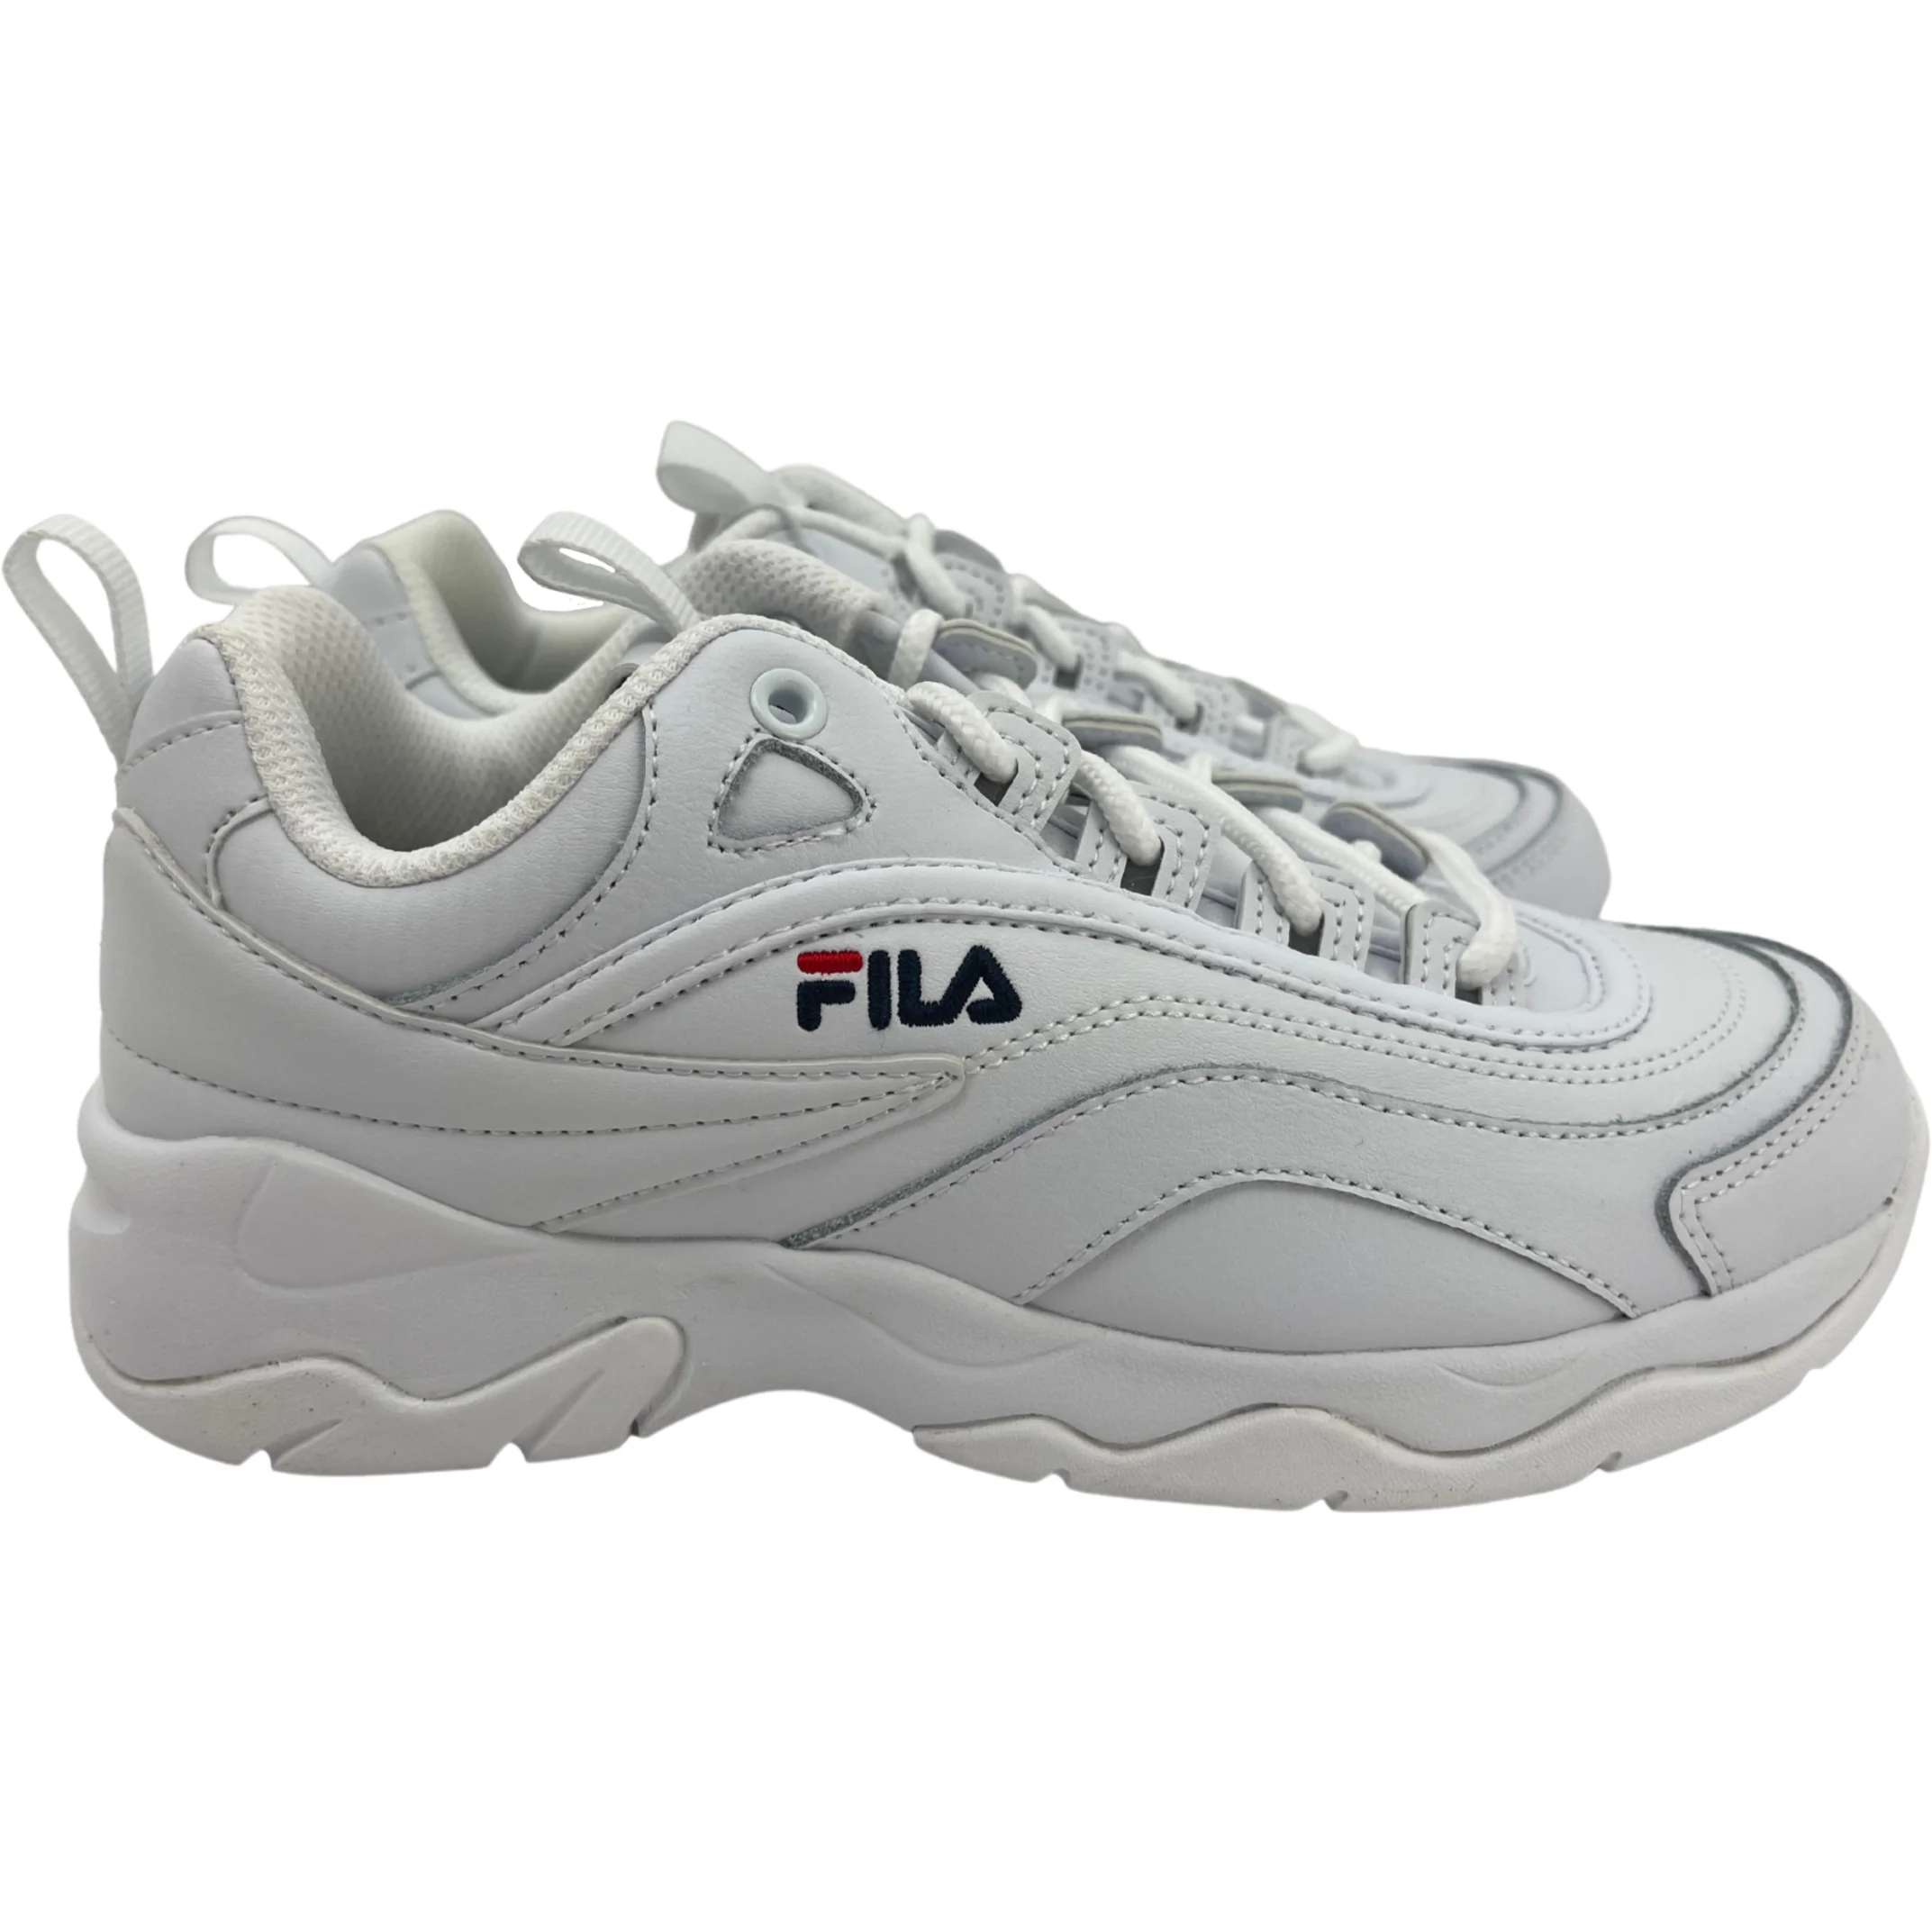 Fila Women's Sneaker / Disarray / White / Streetwear / Size 6